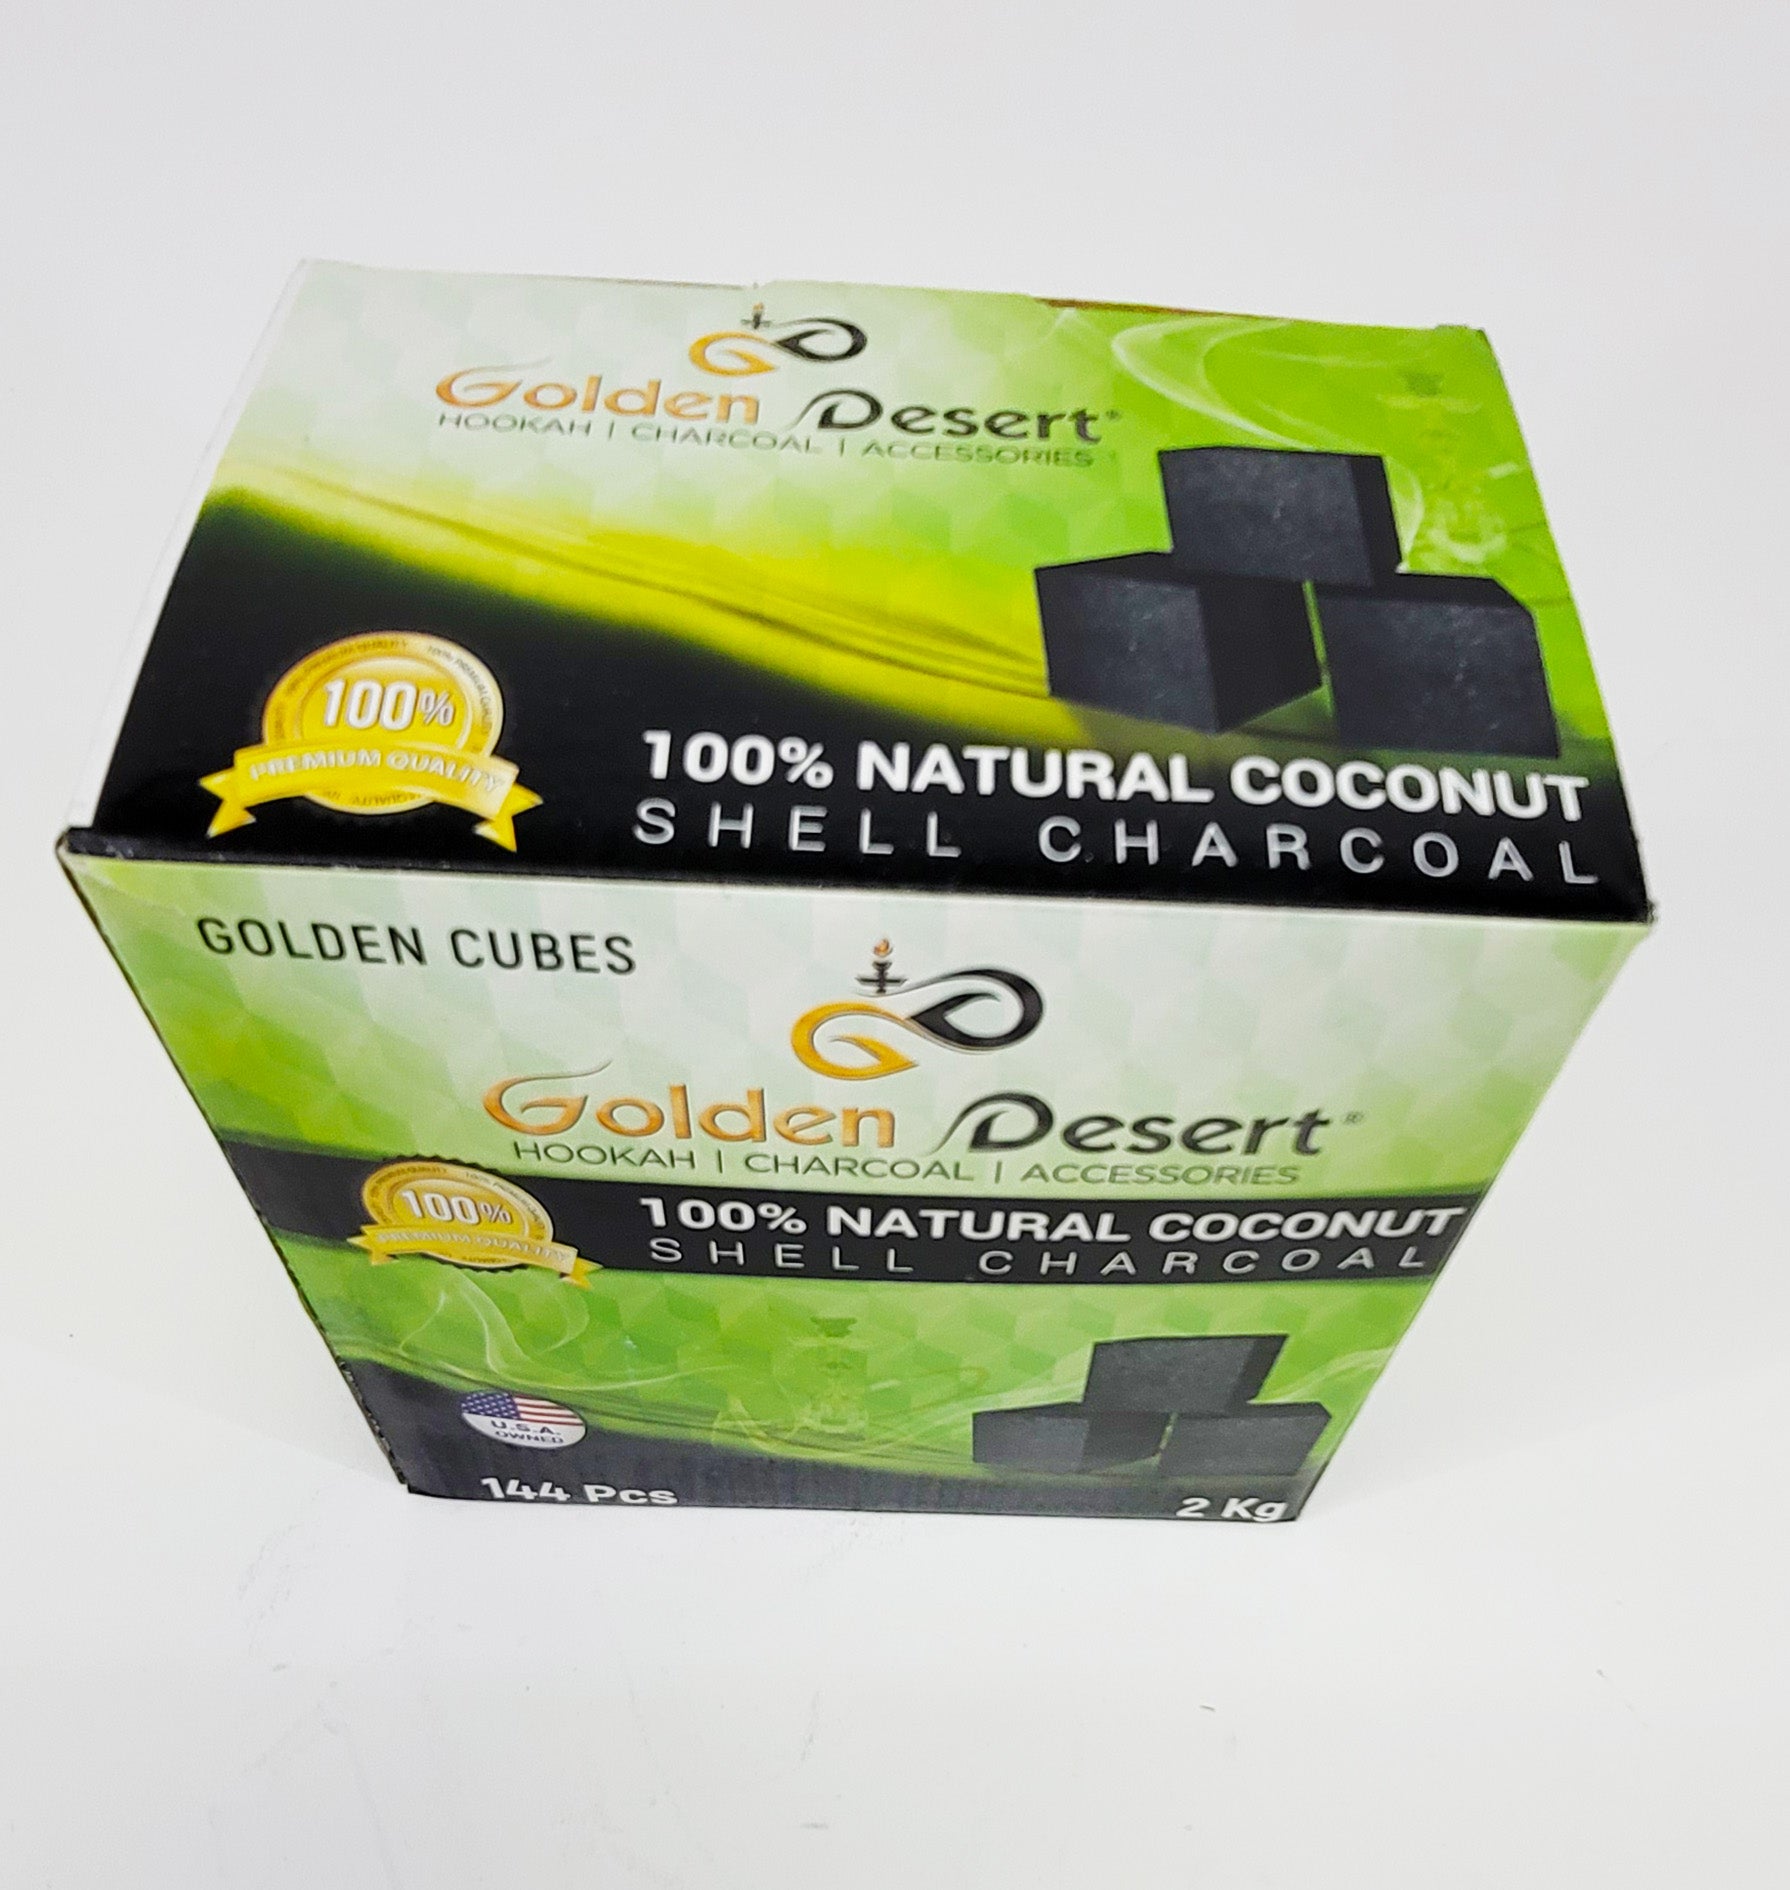 Golden Desert 2 kg box coconut charcoal